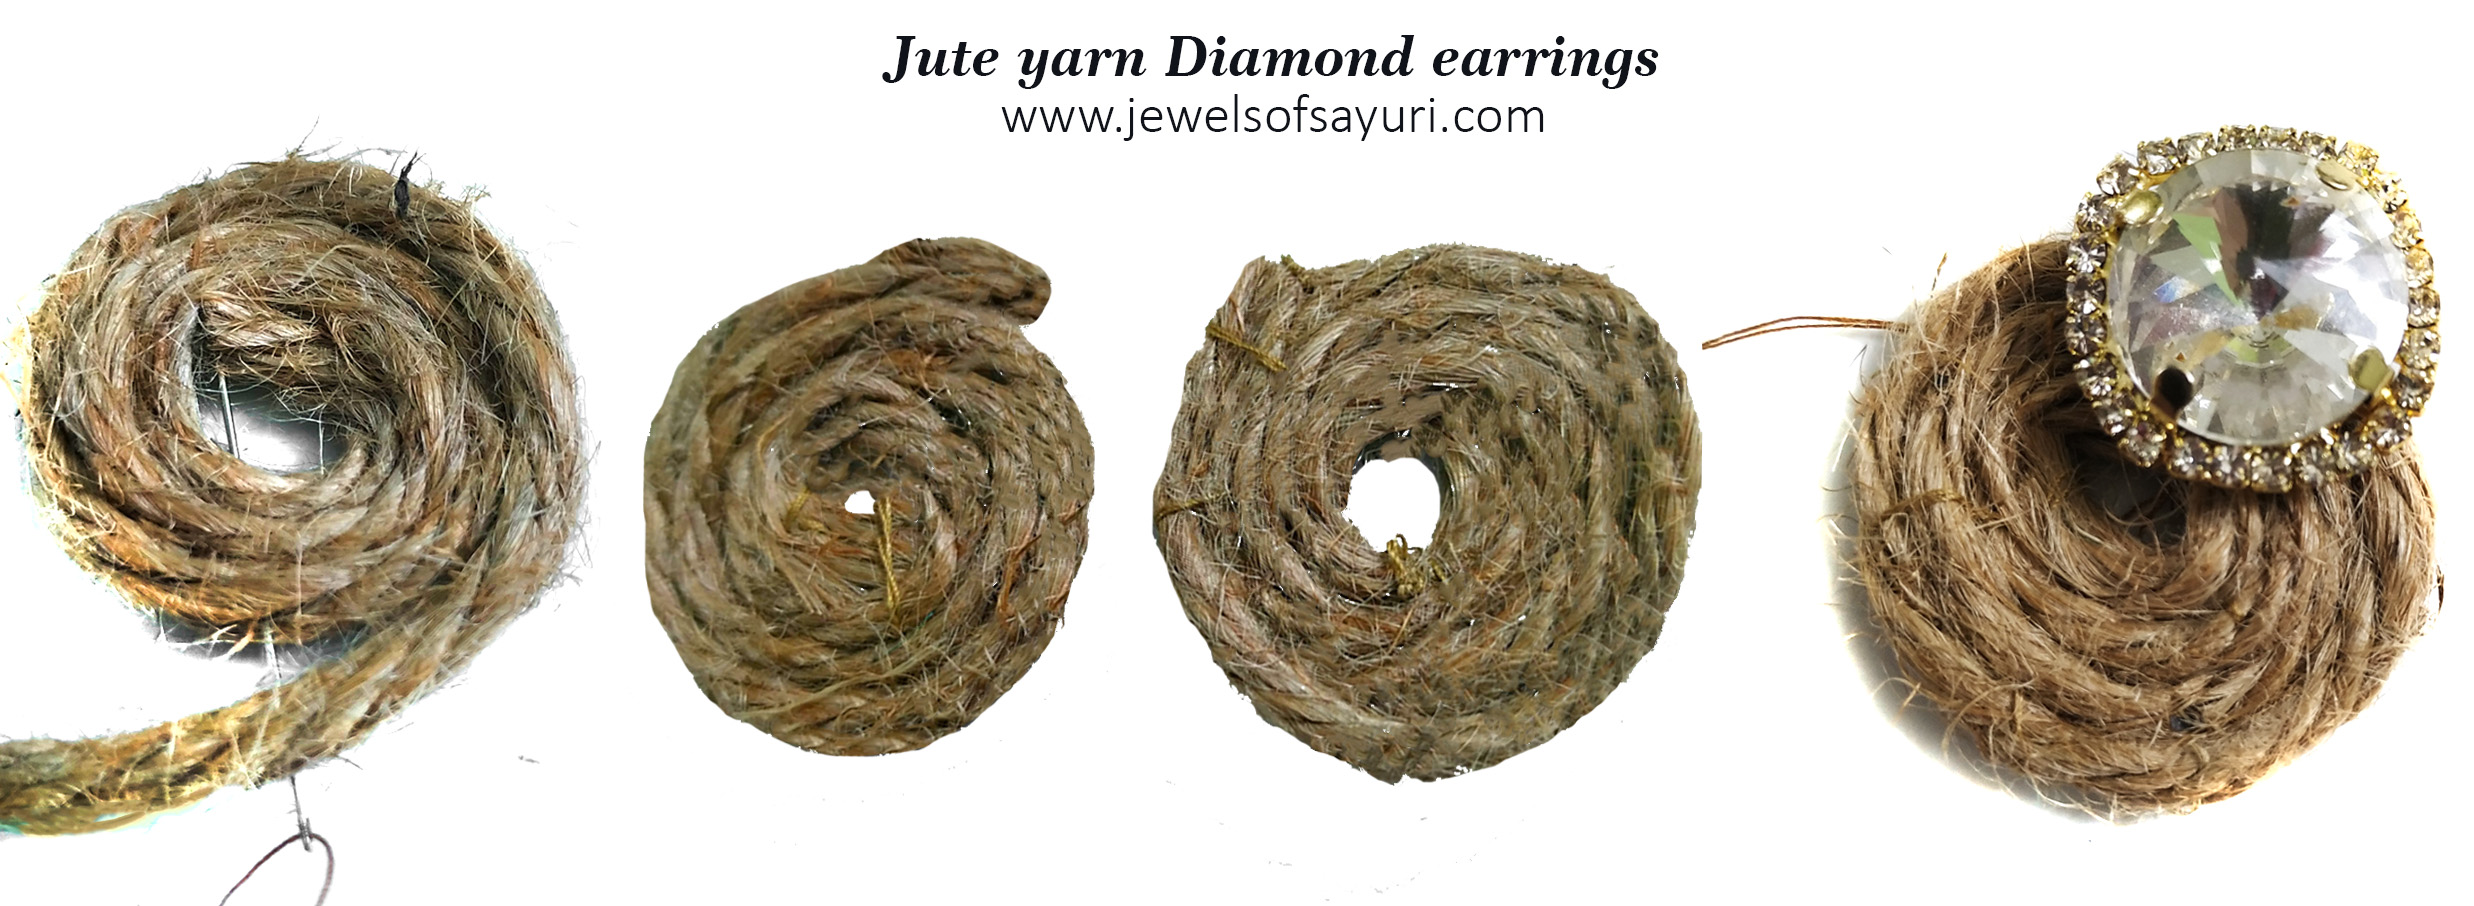 ute yarn diamond earrings tutorial 1